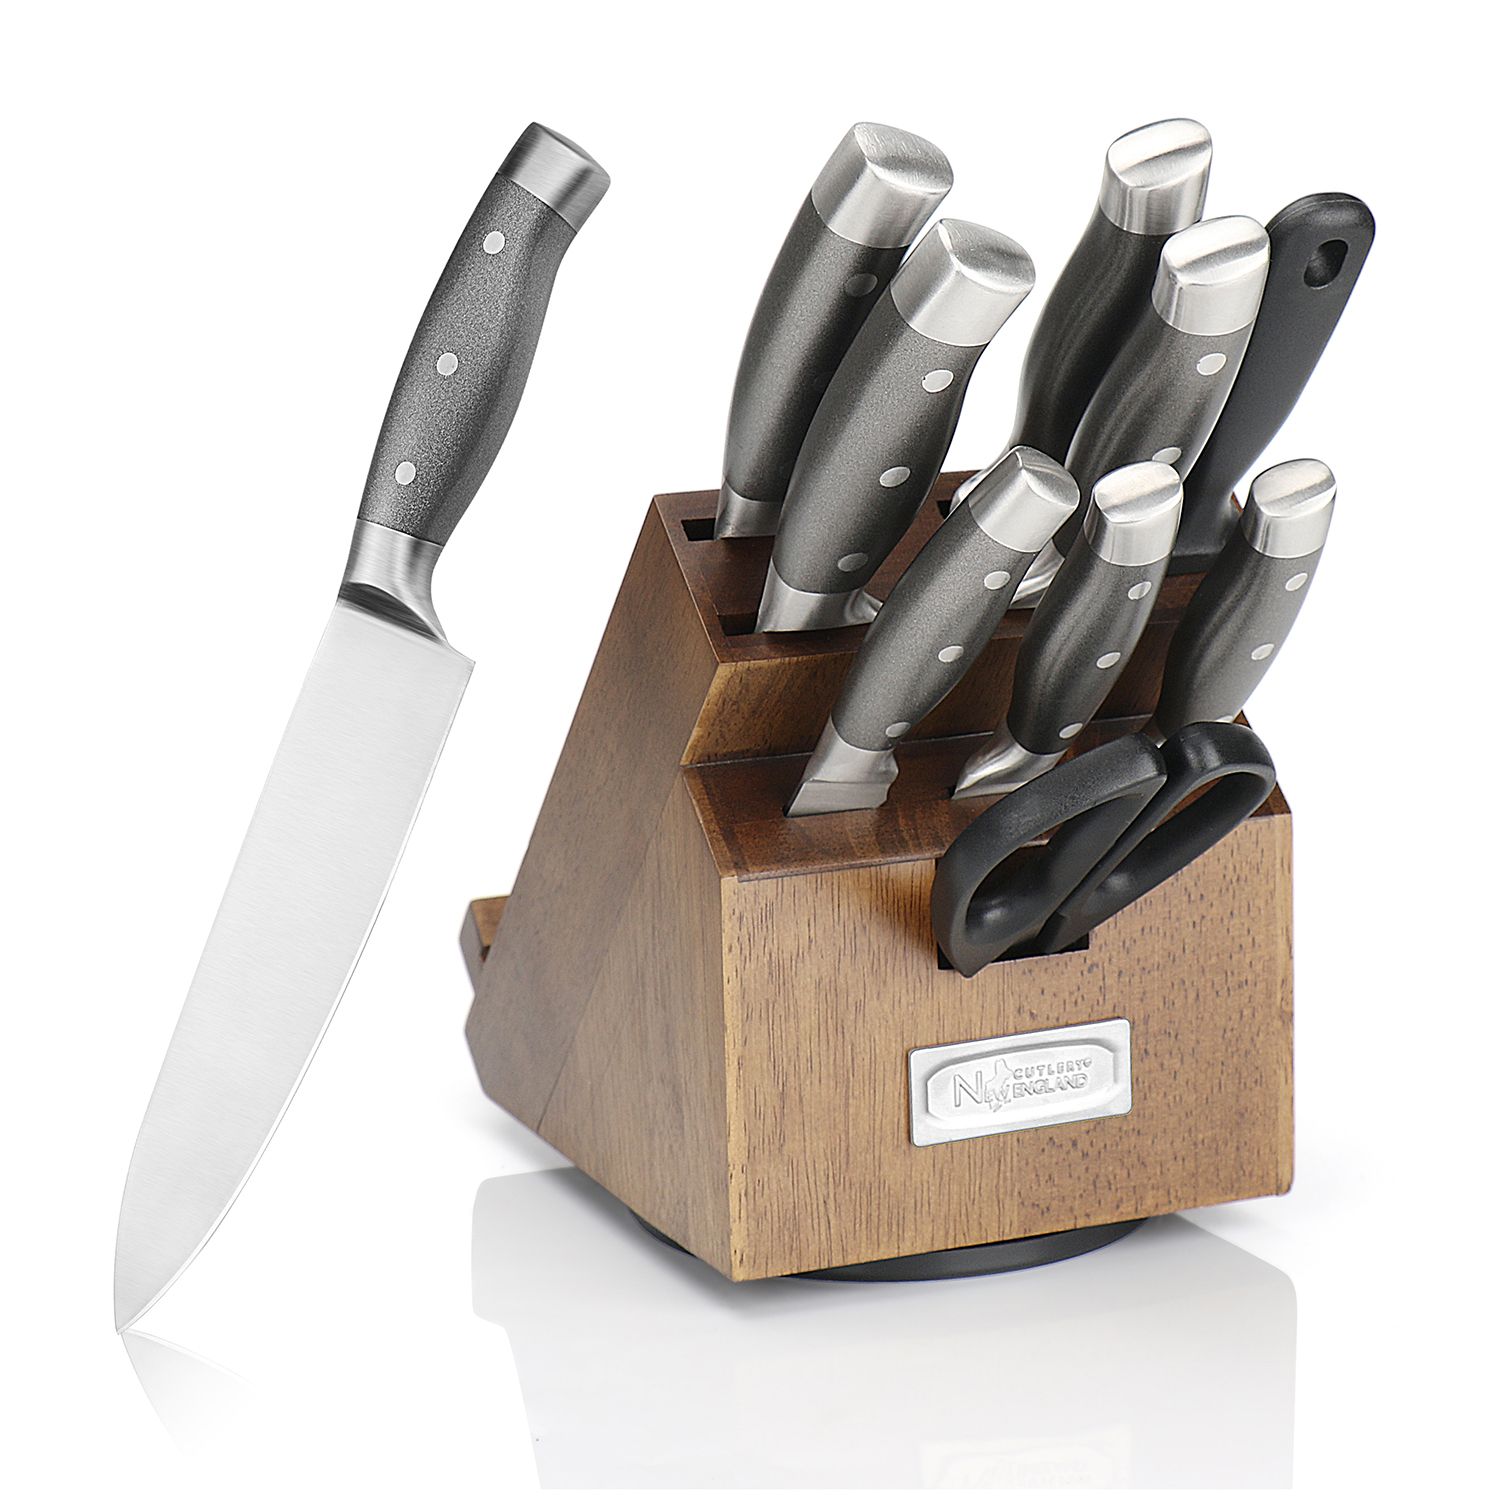 Fingerhut - Gourmet Edge 15-Pc. Full Tang Classic Knife Block Set